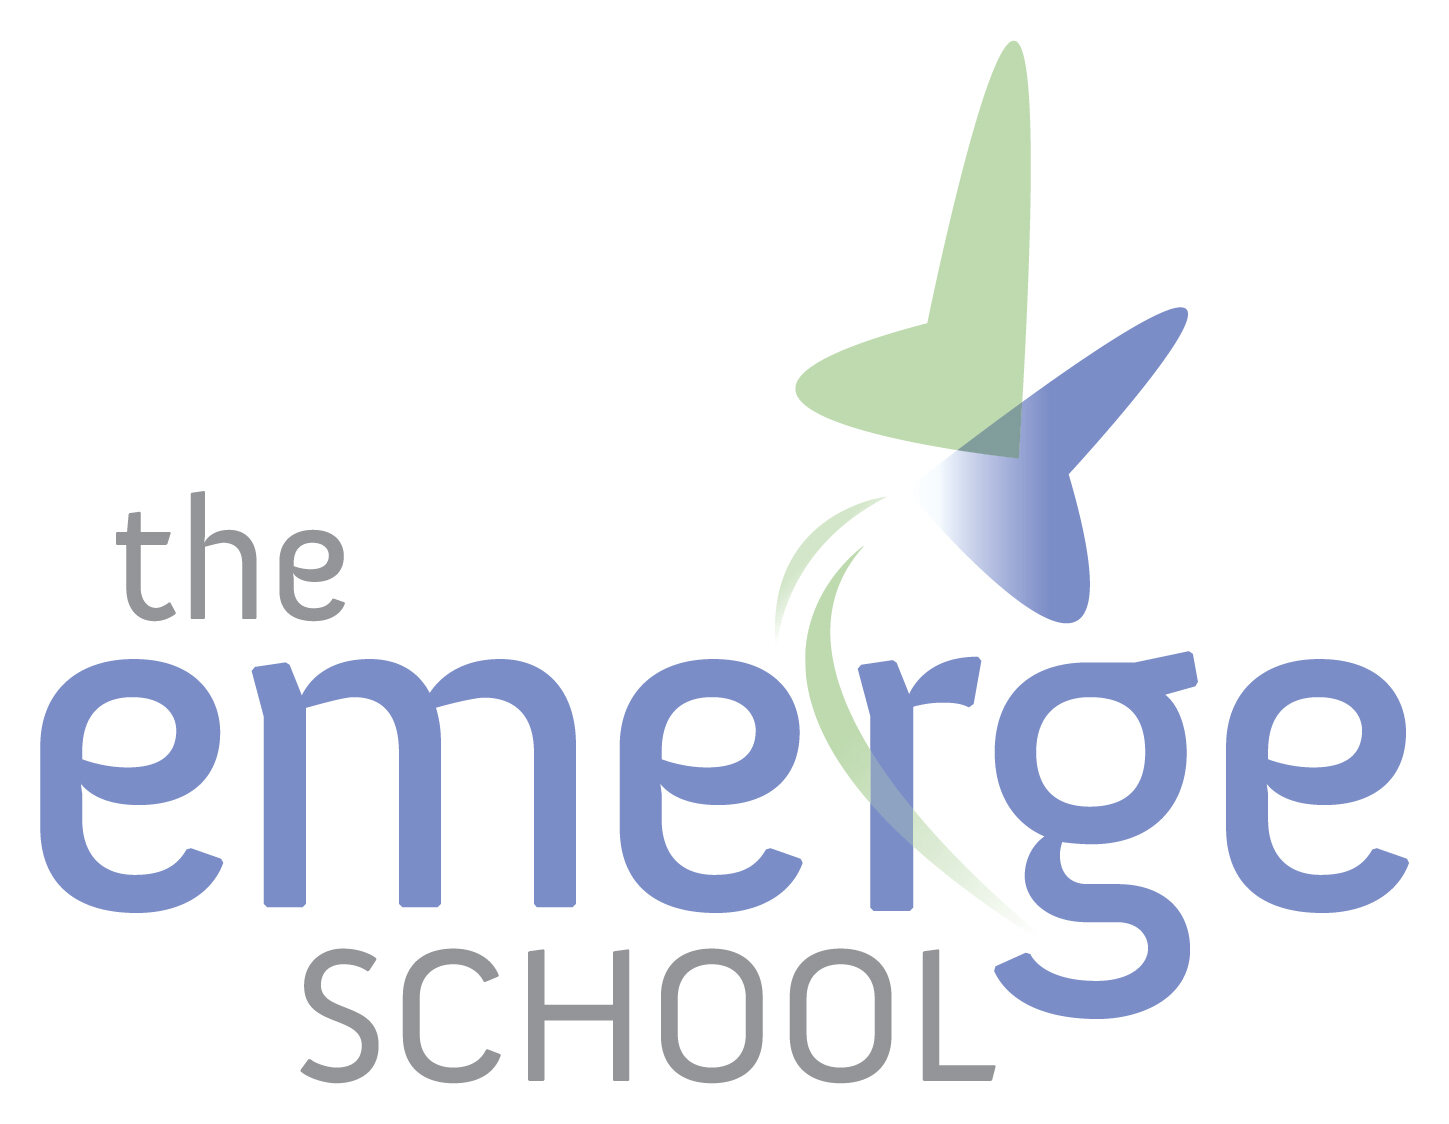 The Emerge School